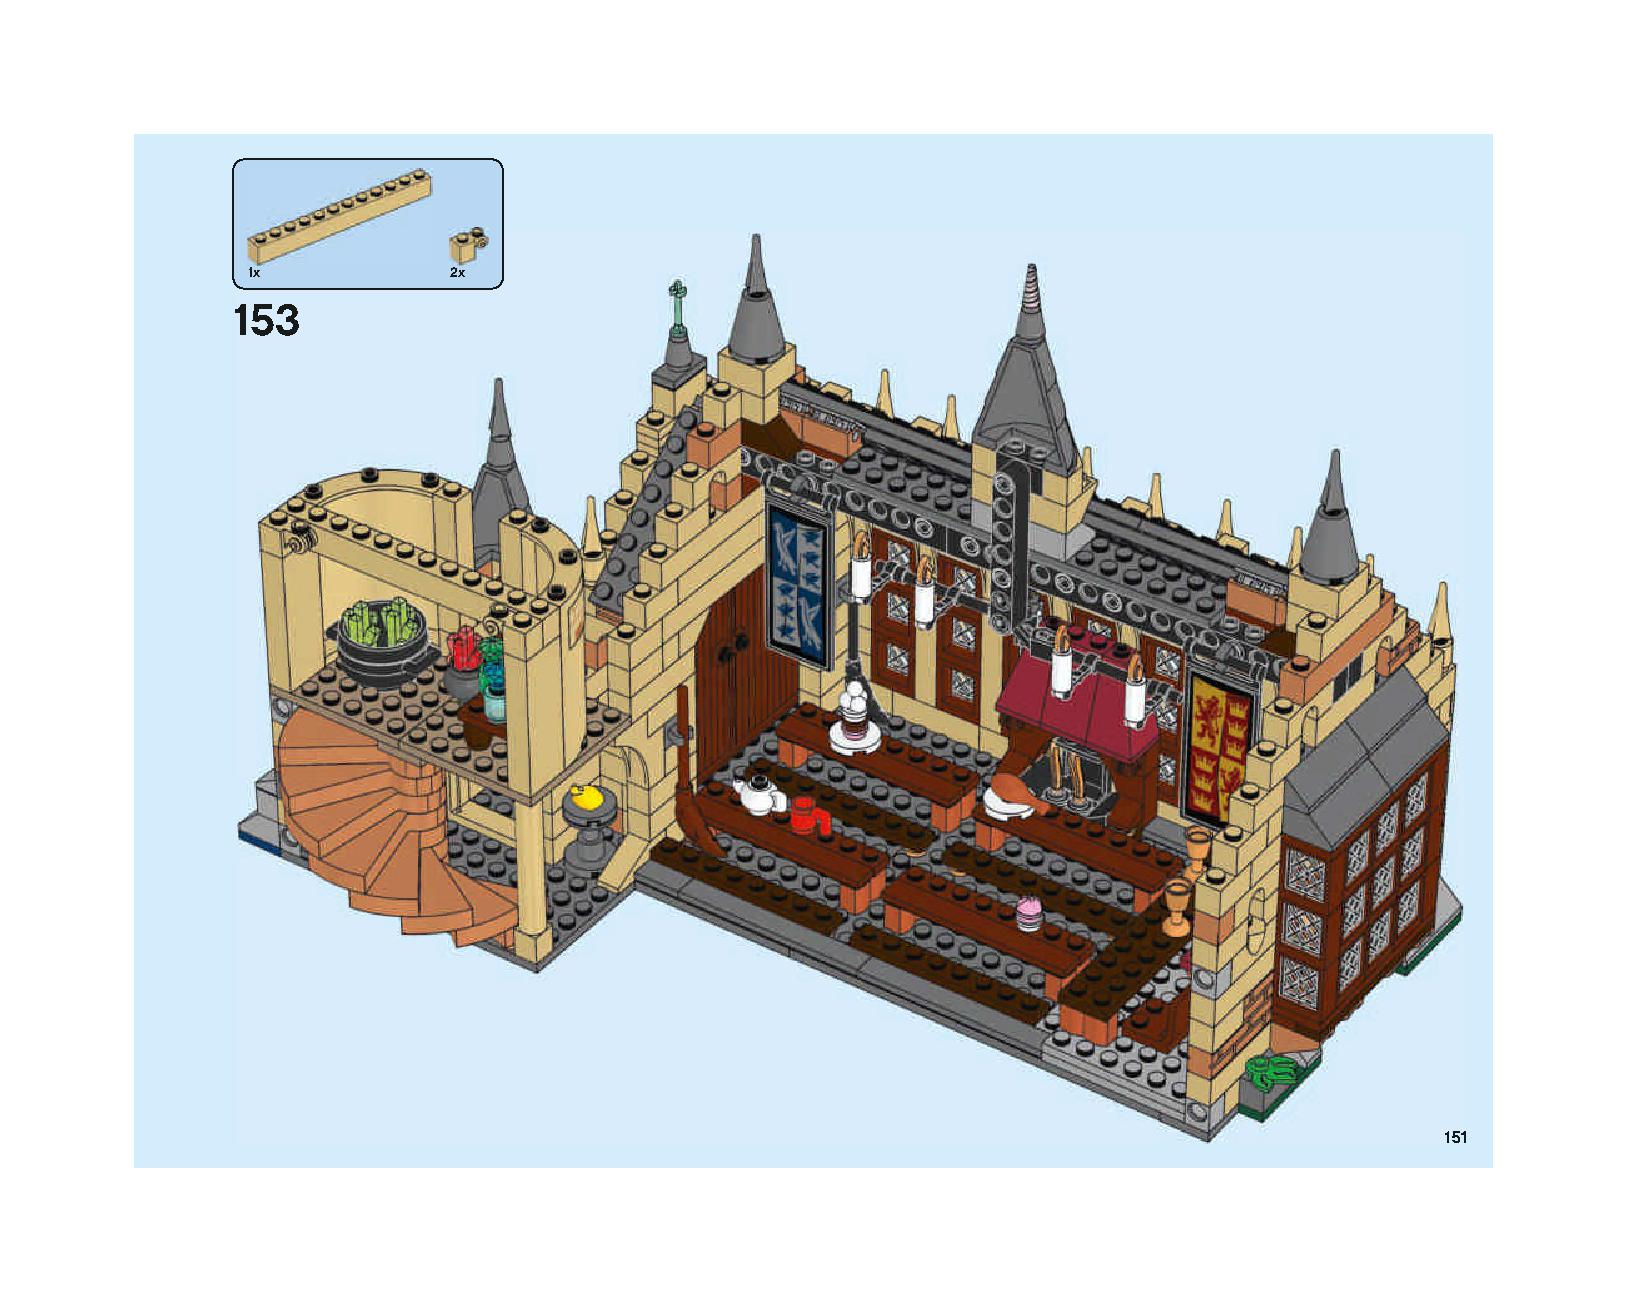 ホグワーツの大広間 75954 レゴの商品情報 レゴの説明書・組立方法 151 page